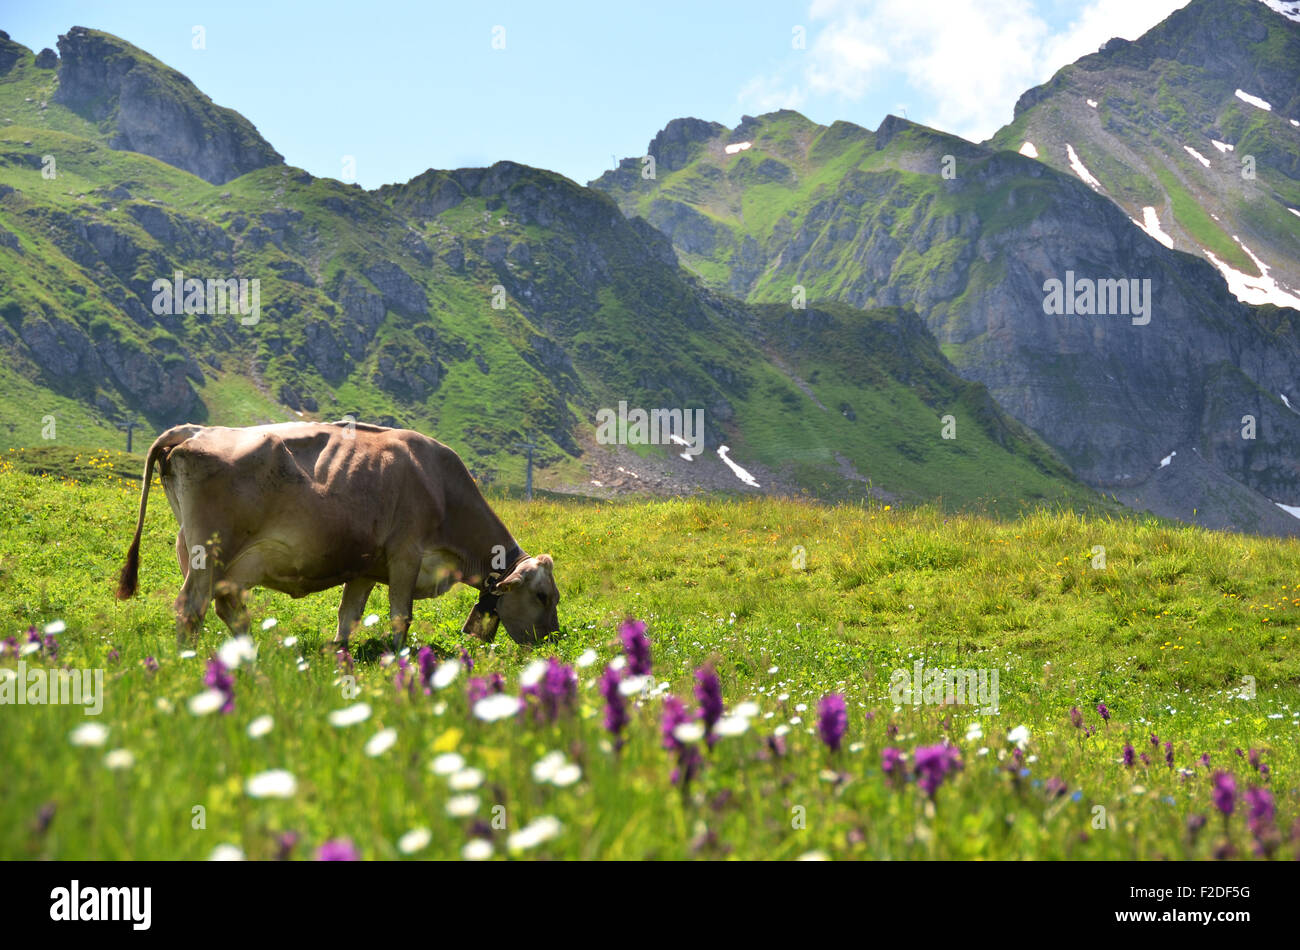 Vache dans un pré alpin. Melchsee-Frutt, Suisse Banque D'Images